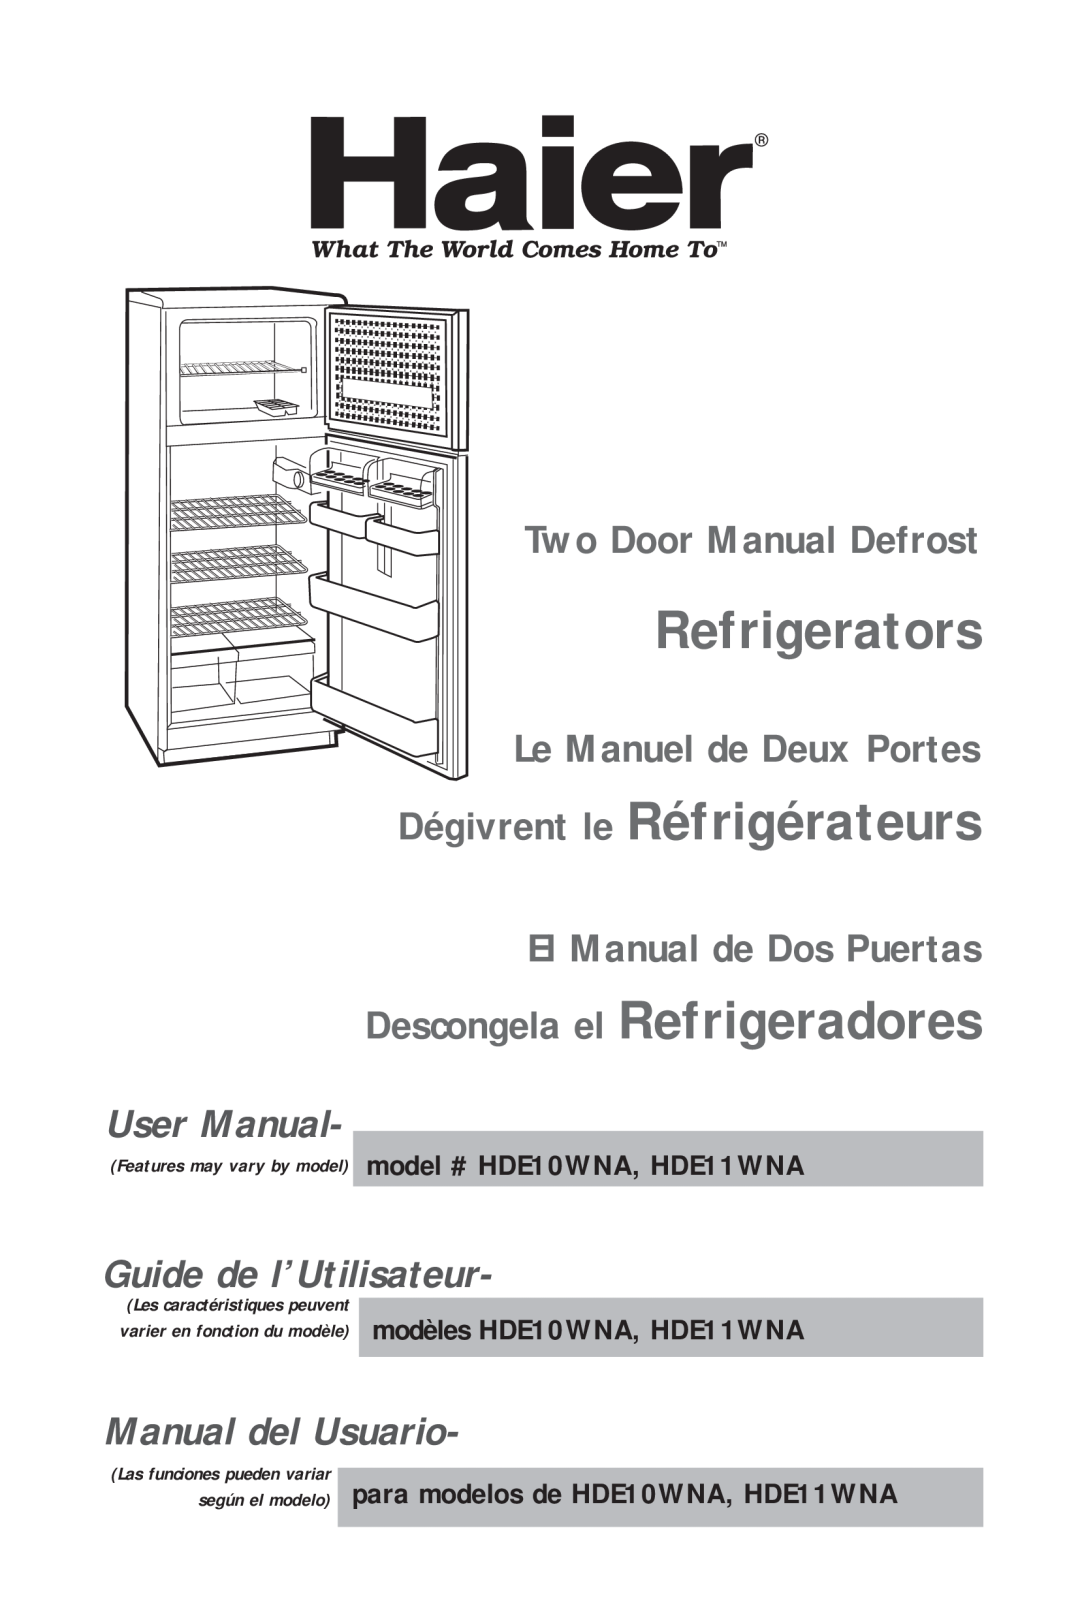 Haier HDE11WNA, HDE10WNA user manual Refrigerators, Dégivrent le Réfrigérateurs, User Manual, Guide de l’Utilisateur 